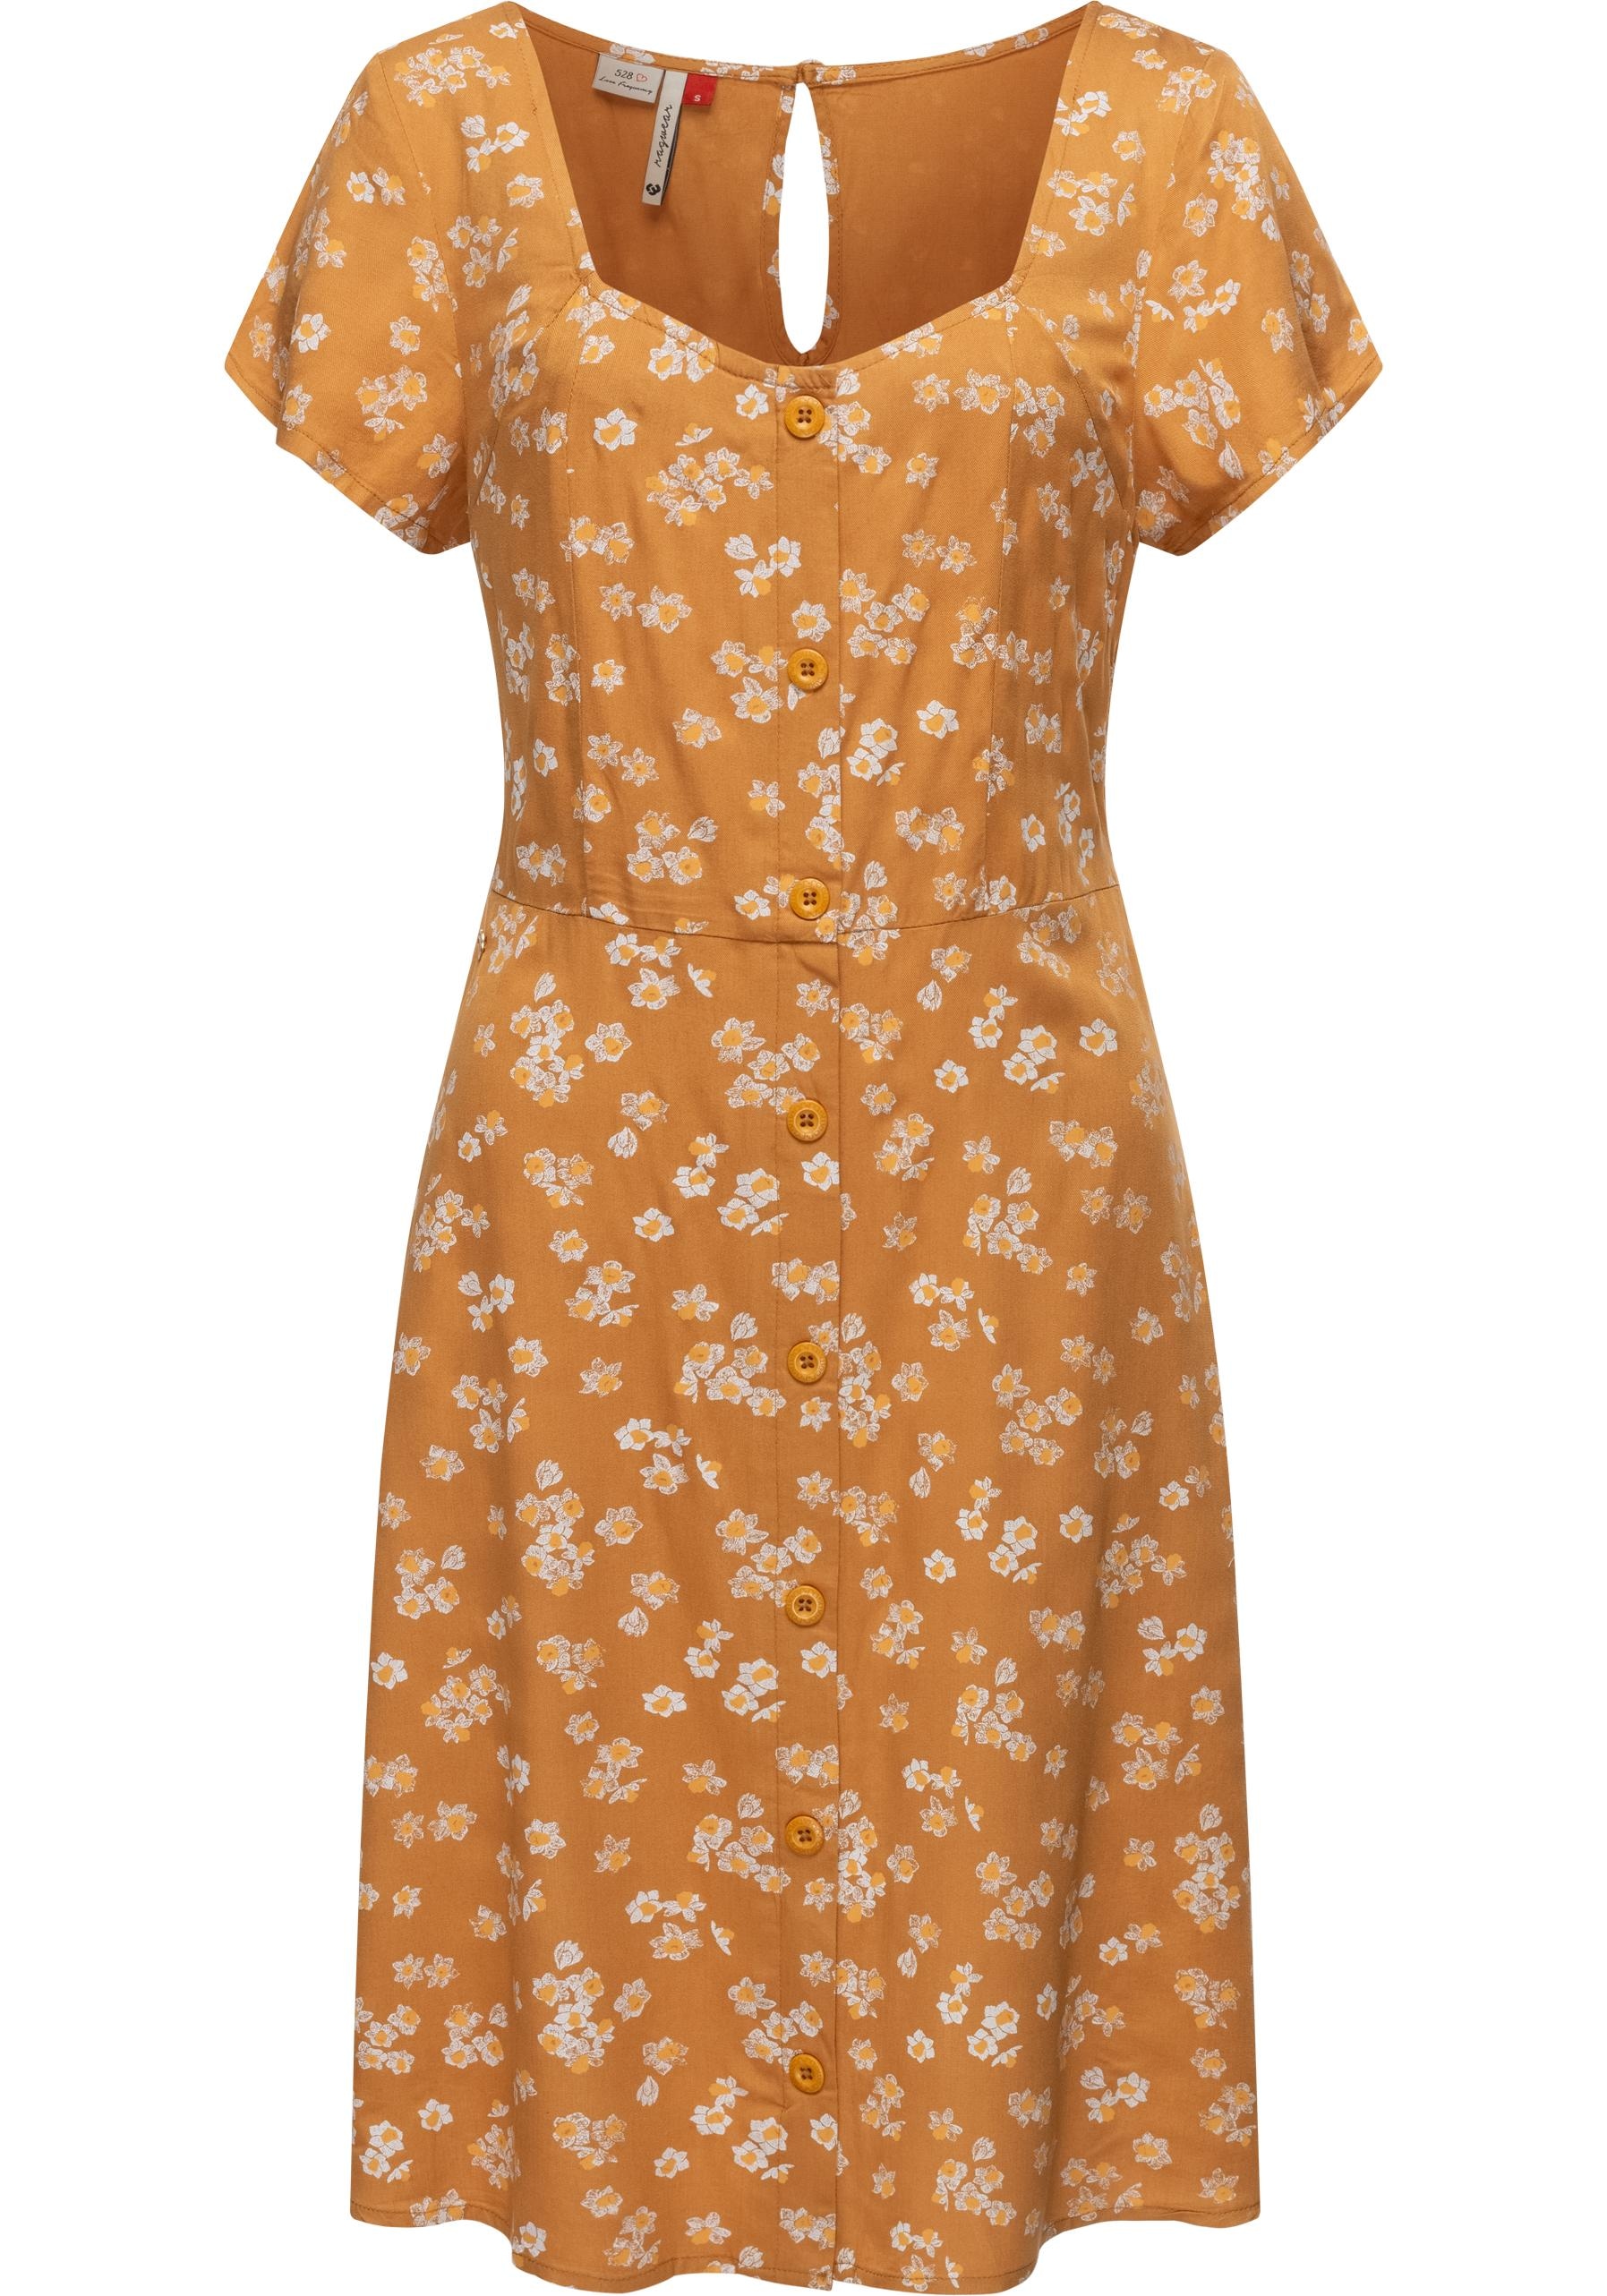 Ragwear Blusenkleid »Anerley«, stylisches Sommerkleid mit Allover Print